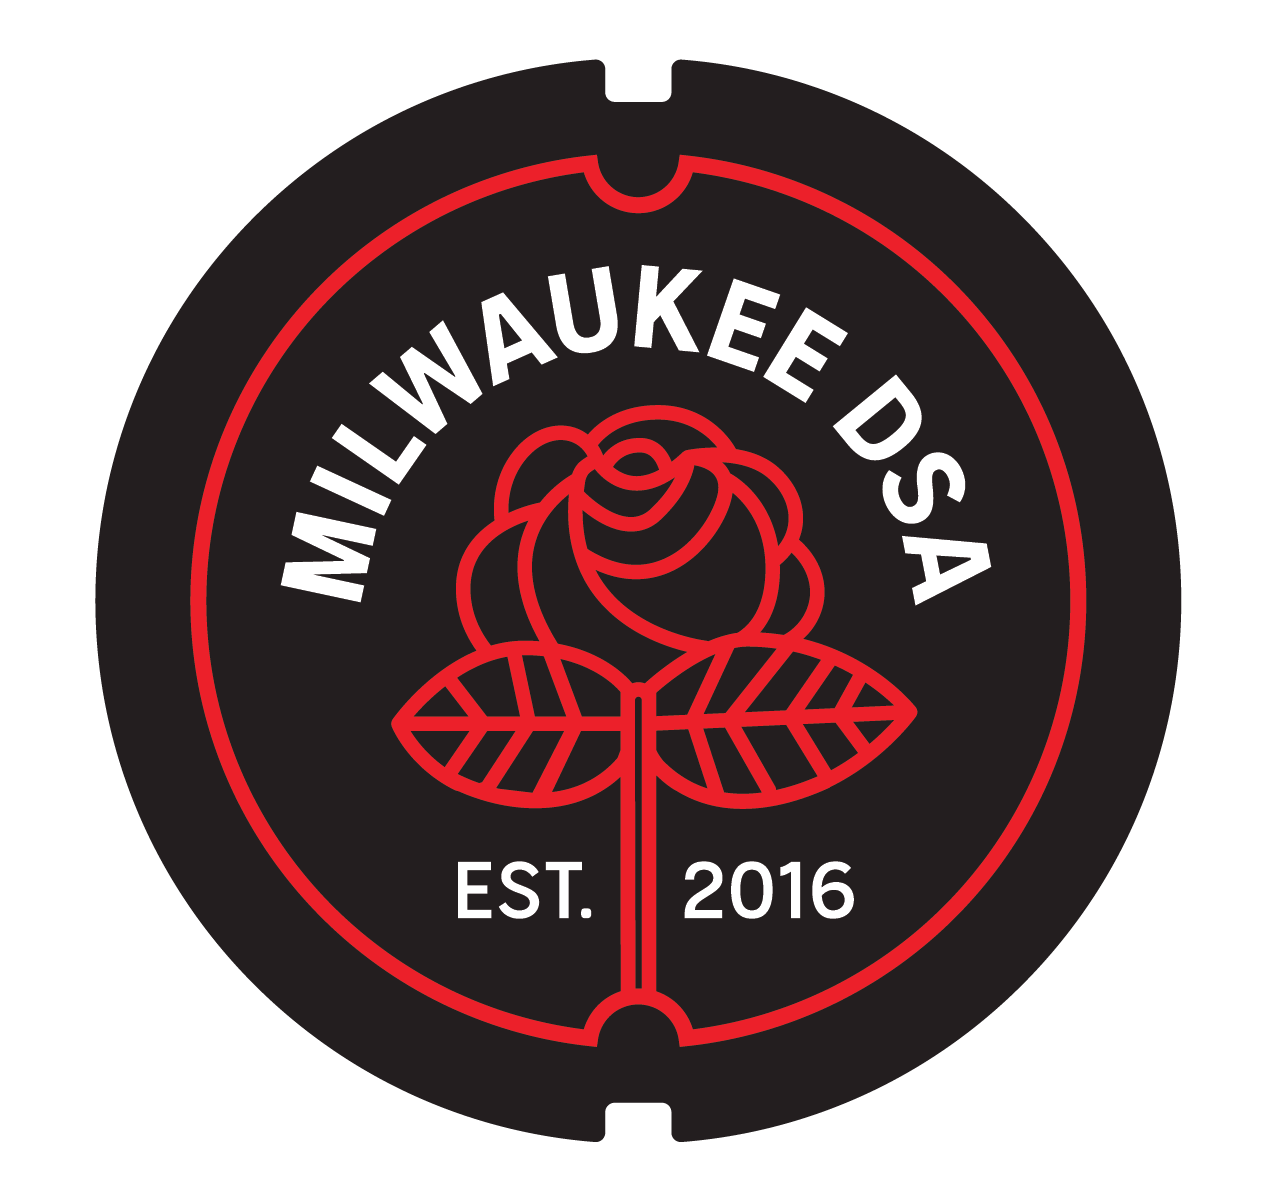 Milwaukee DSA logo